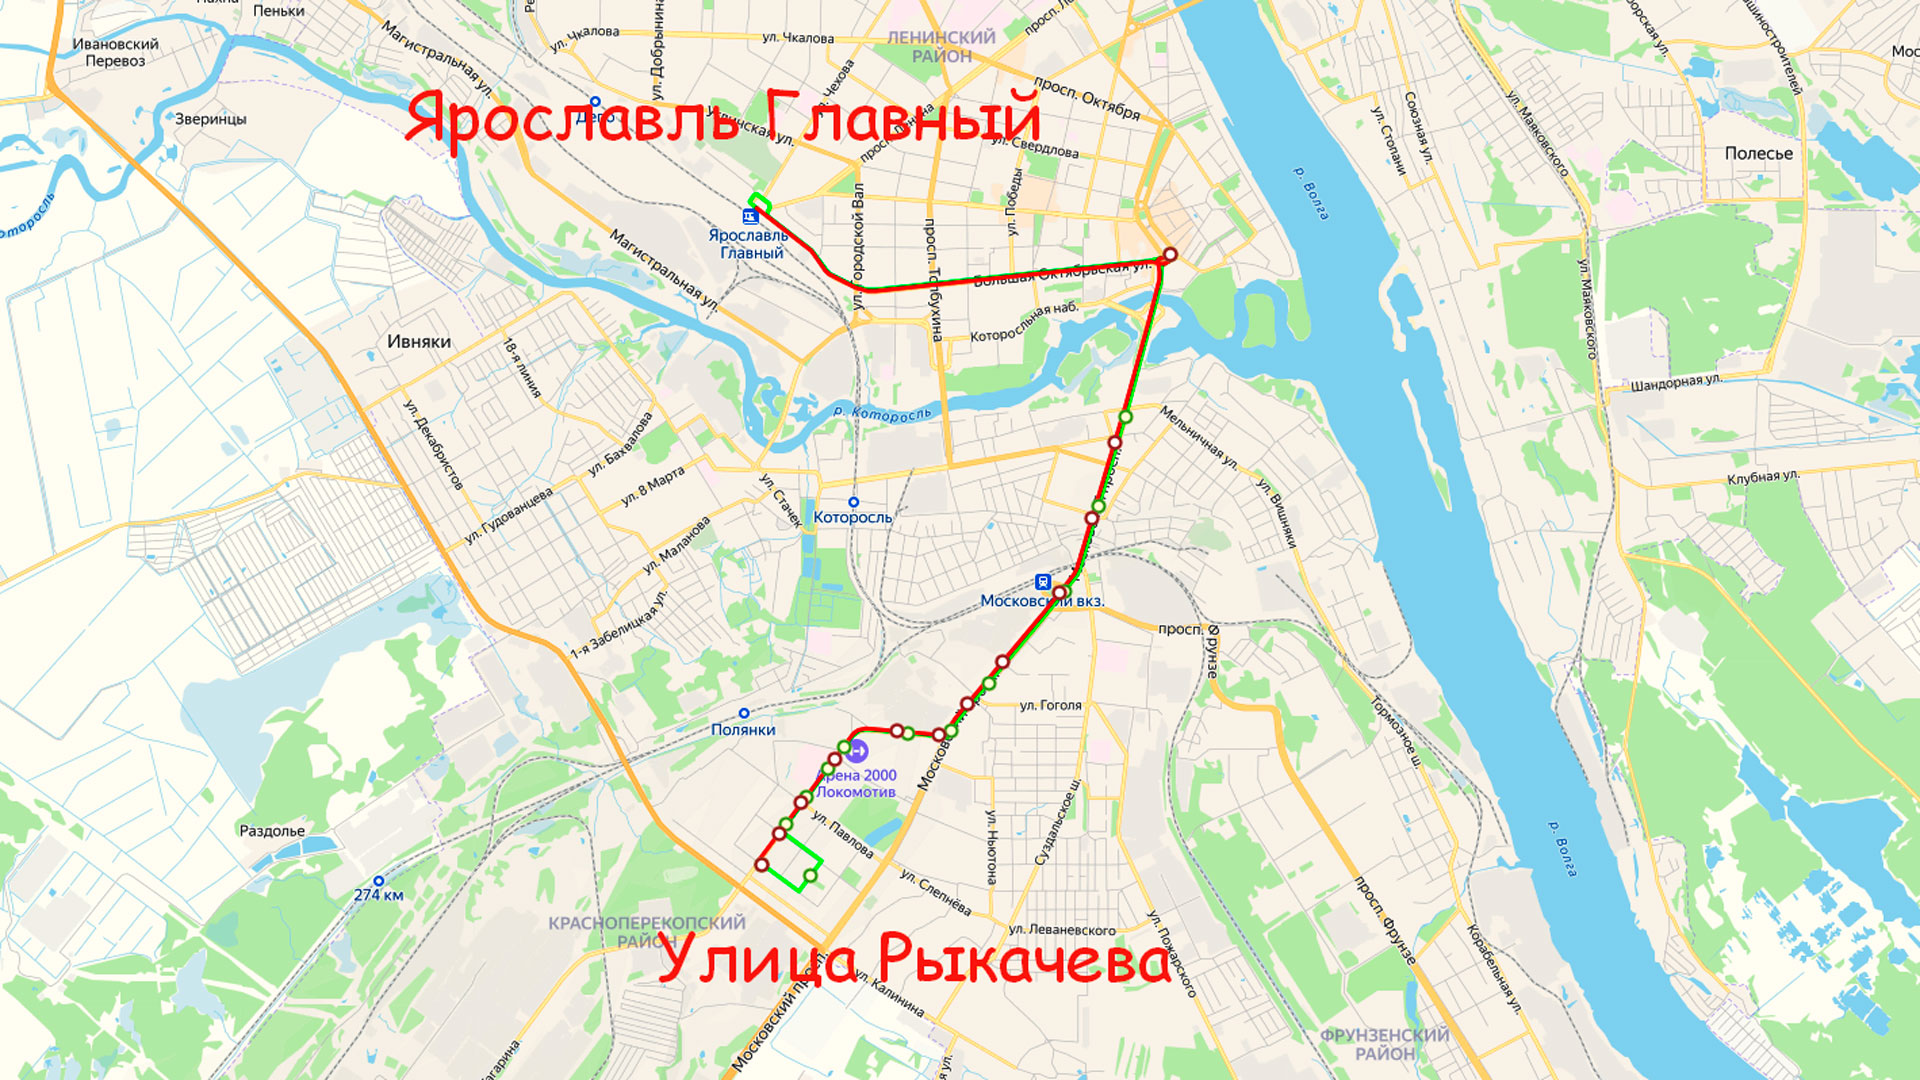 Маршрут троллейбуса 5 в Ярославле на карте.